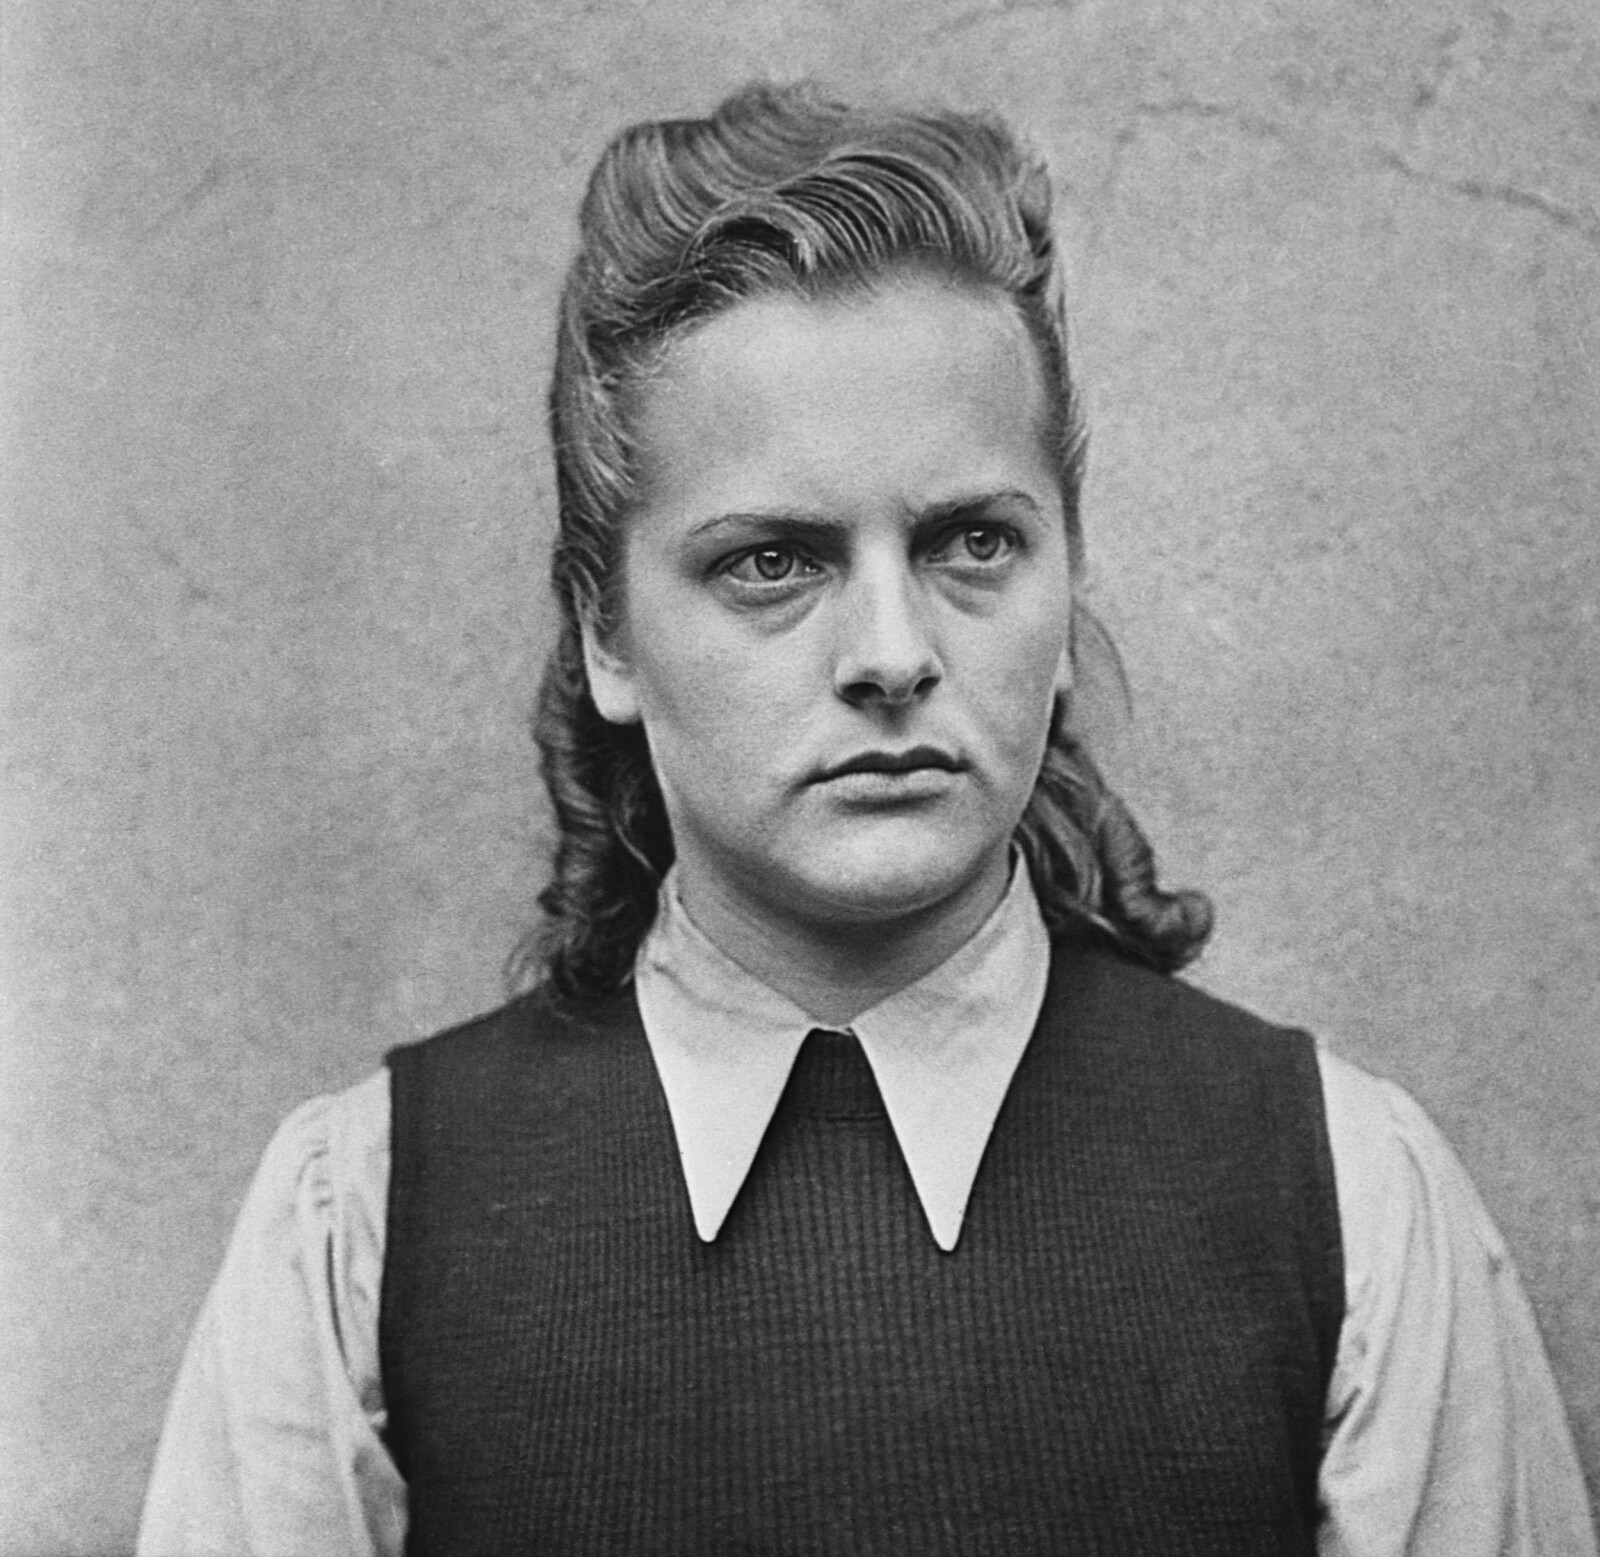 <b><SPAN CLASS=BOLD>BEIST:</b></span> Bare 21 år gammel ble Irma Grese kjent som Det vakre beistet i Auschwitz. Bildet er tatt mens hun ventet på dødsdommen sommeren 1945.